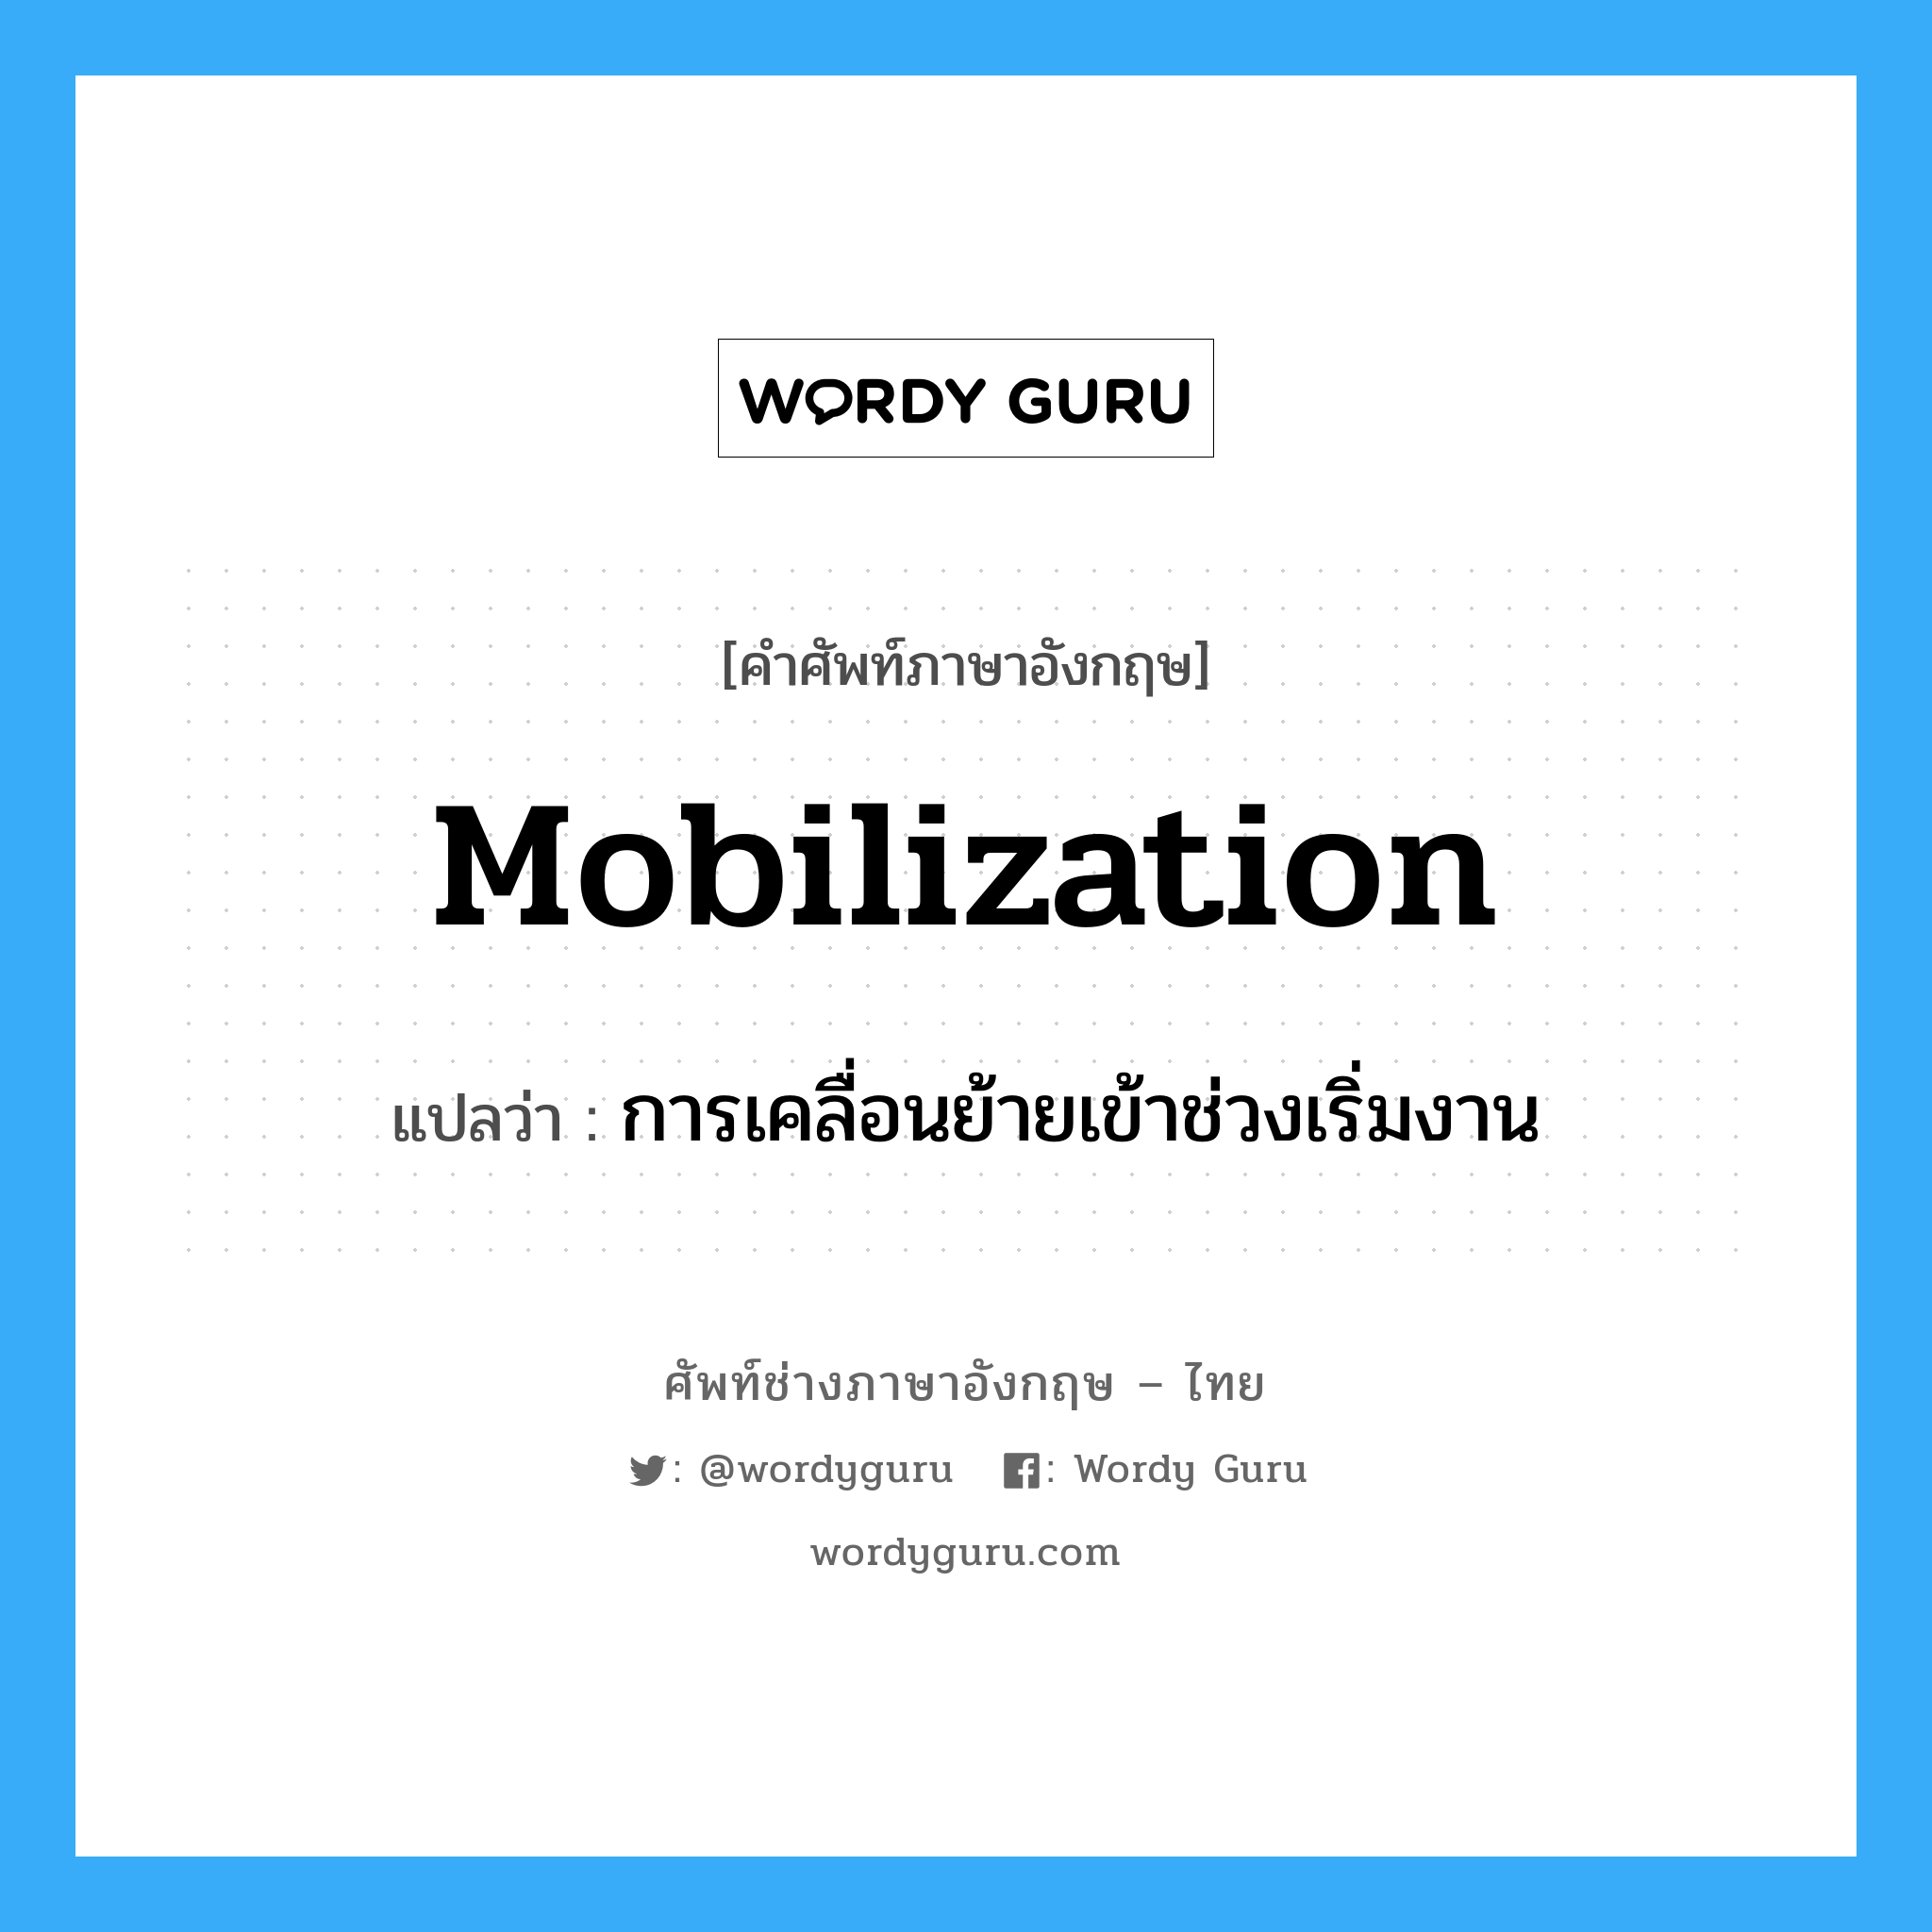 การเคลื่อนย้ายเข้าช่วงเริ่มงาน ภาษาอังกฤษ?, คำศัพท์ช่างภาษาอังกฤษ - ไทย การเคลื่อนย้ายเข้าช่วงเริ่มงาน คำศัพท์ภาษาอังกฤษ การเคลื่อนย้ายเข้าช่วงเริ่มงาน แปลว่า mobilization